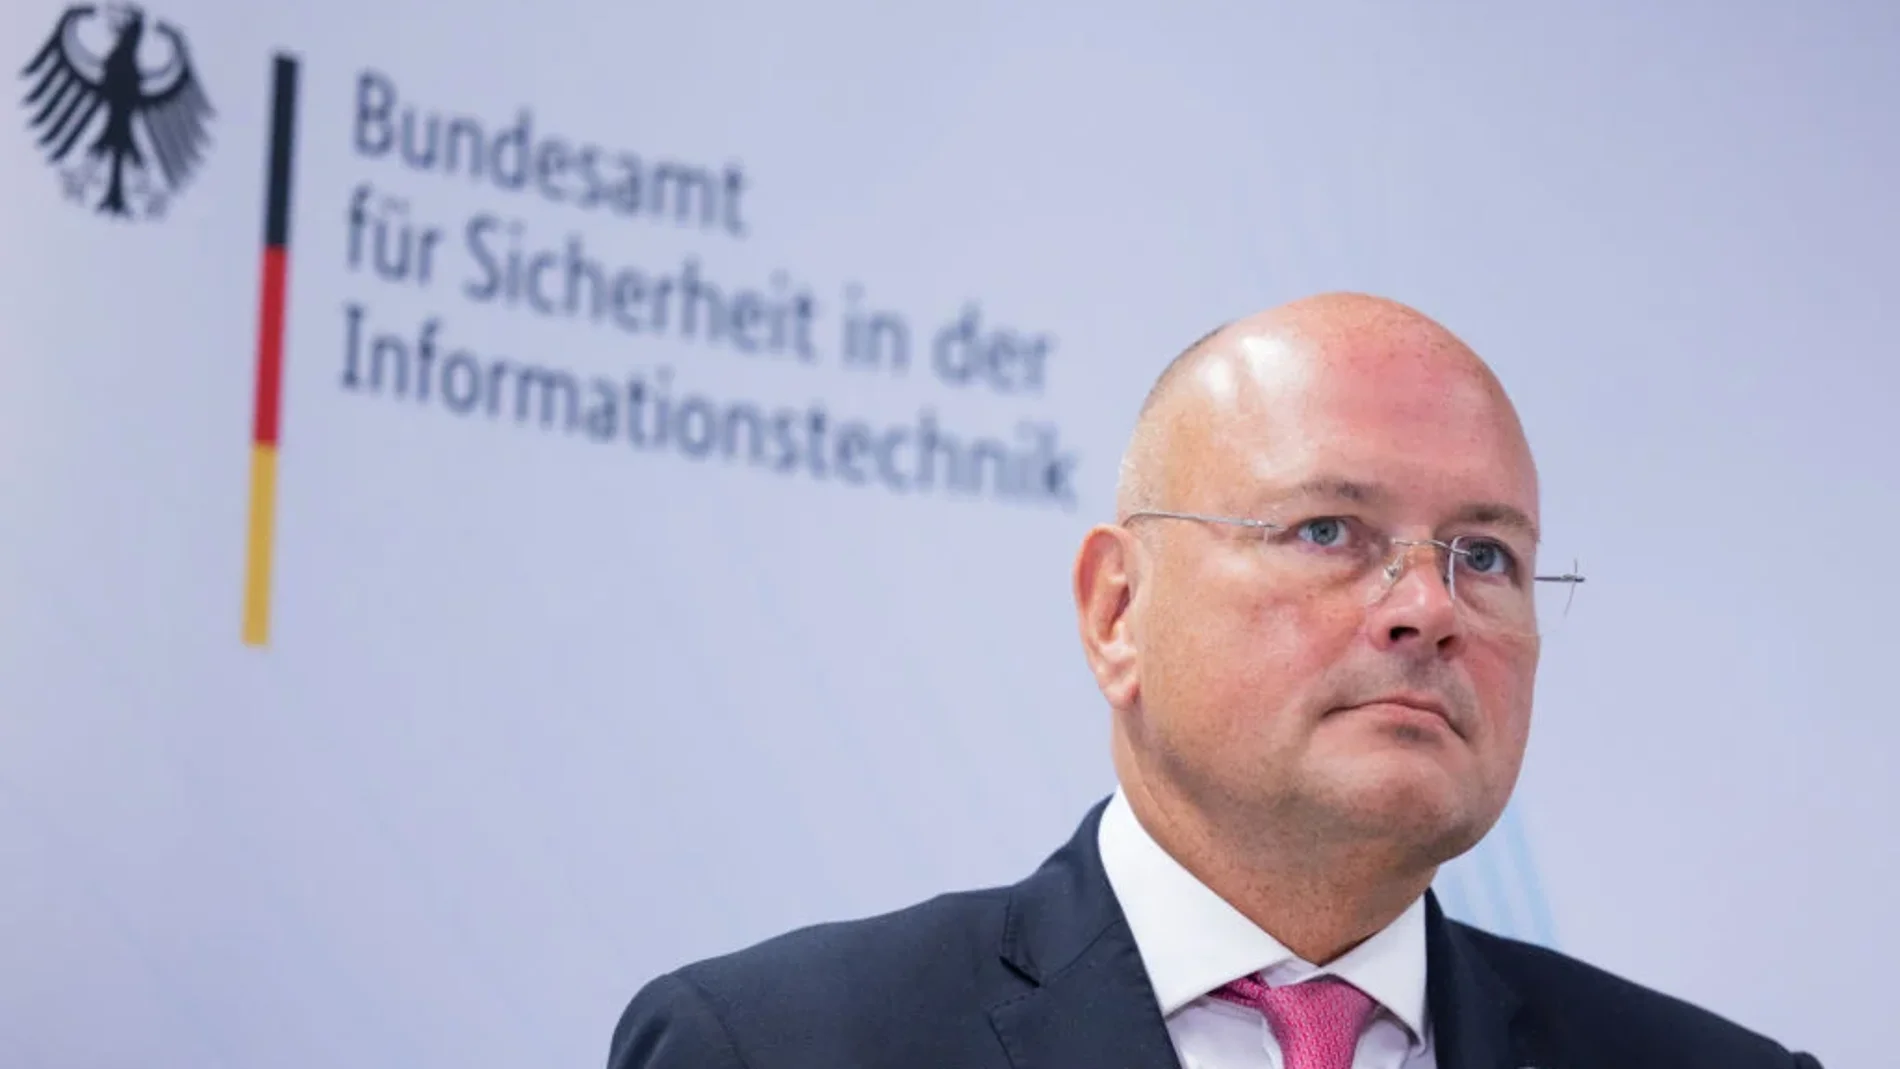 Arne Schönbohm, jefe de la agencia alemana de ciberseguridad